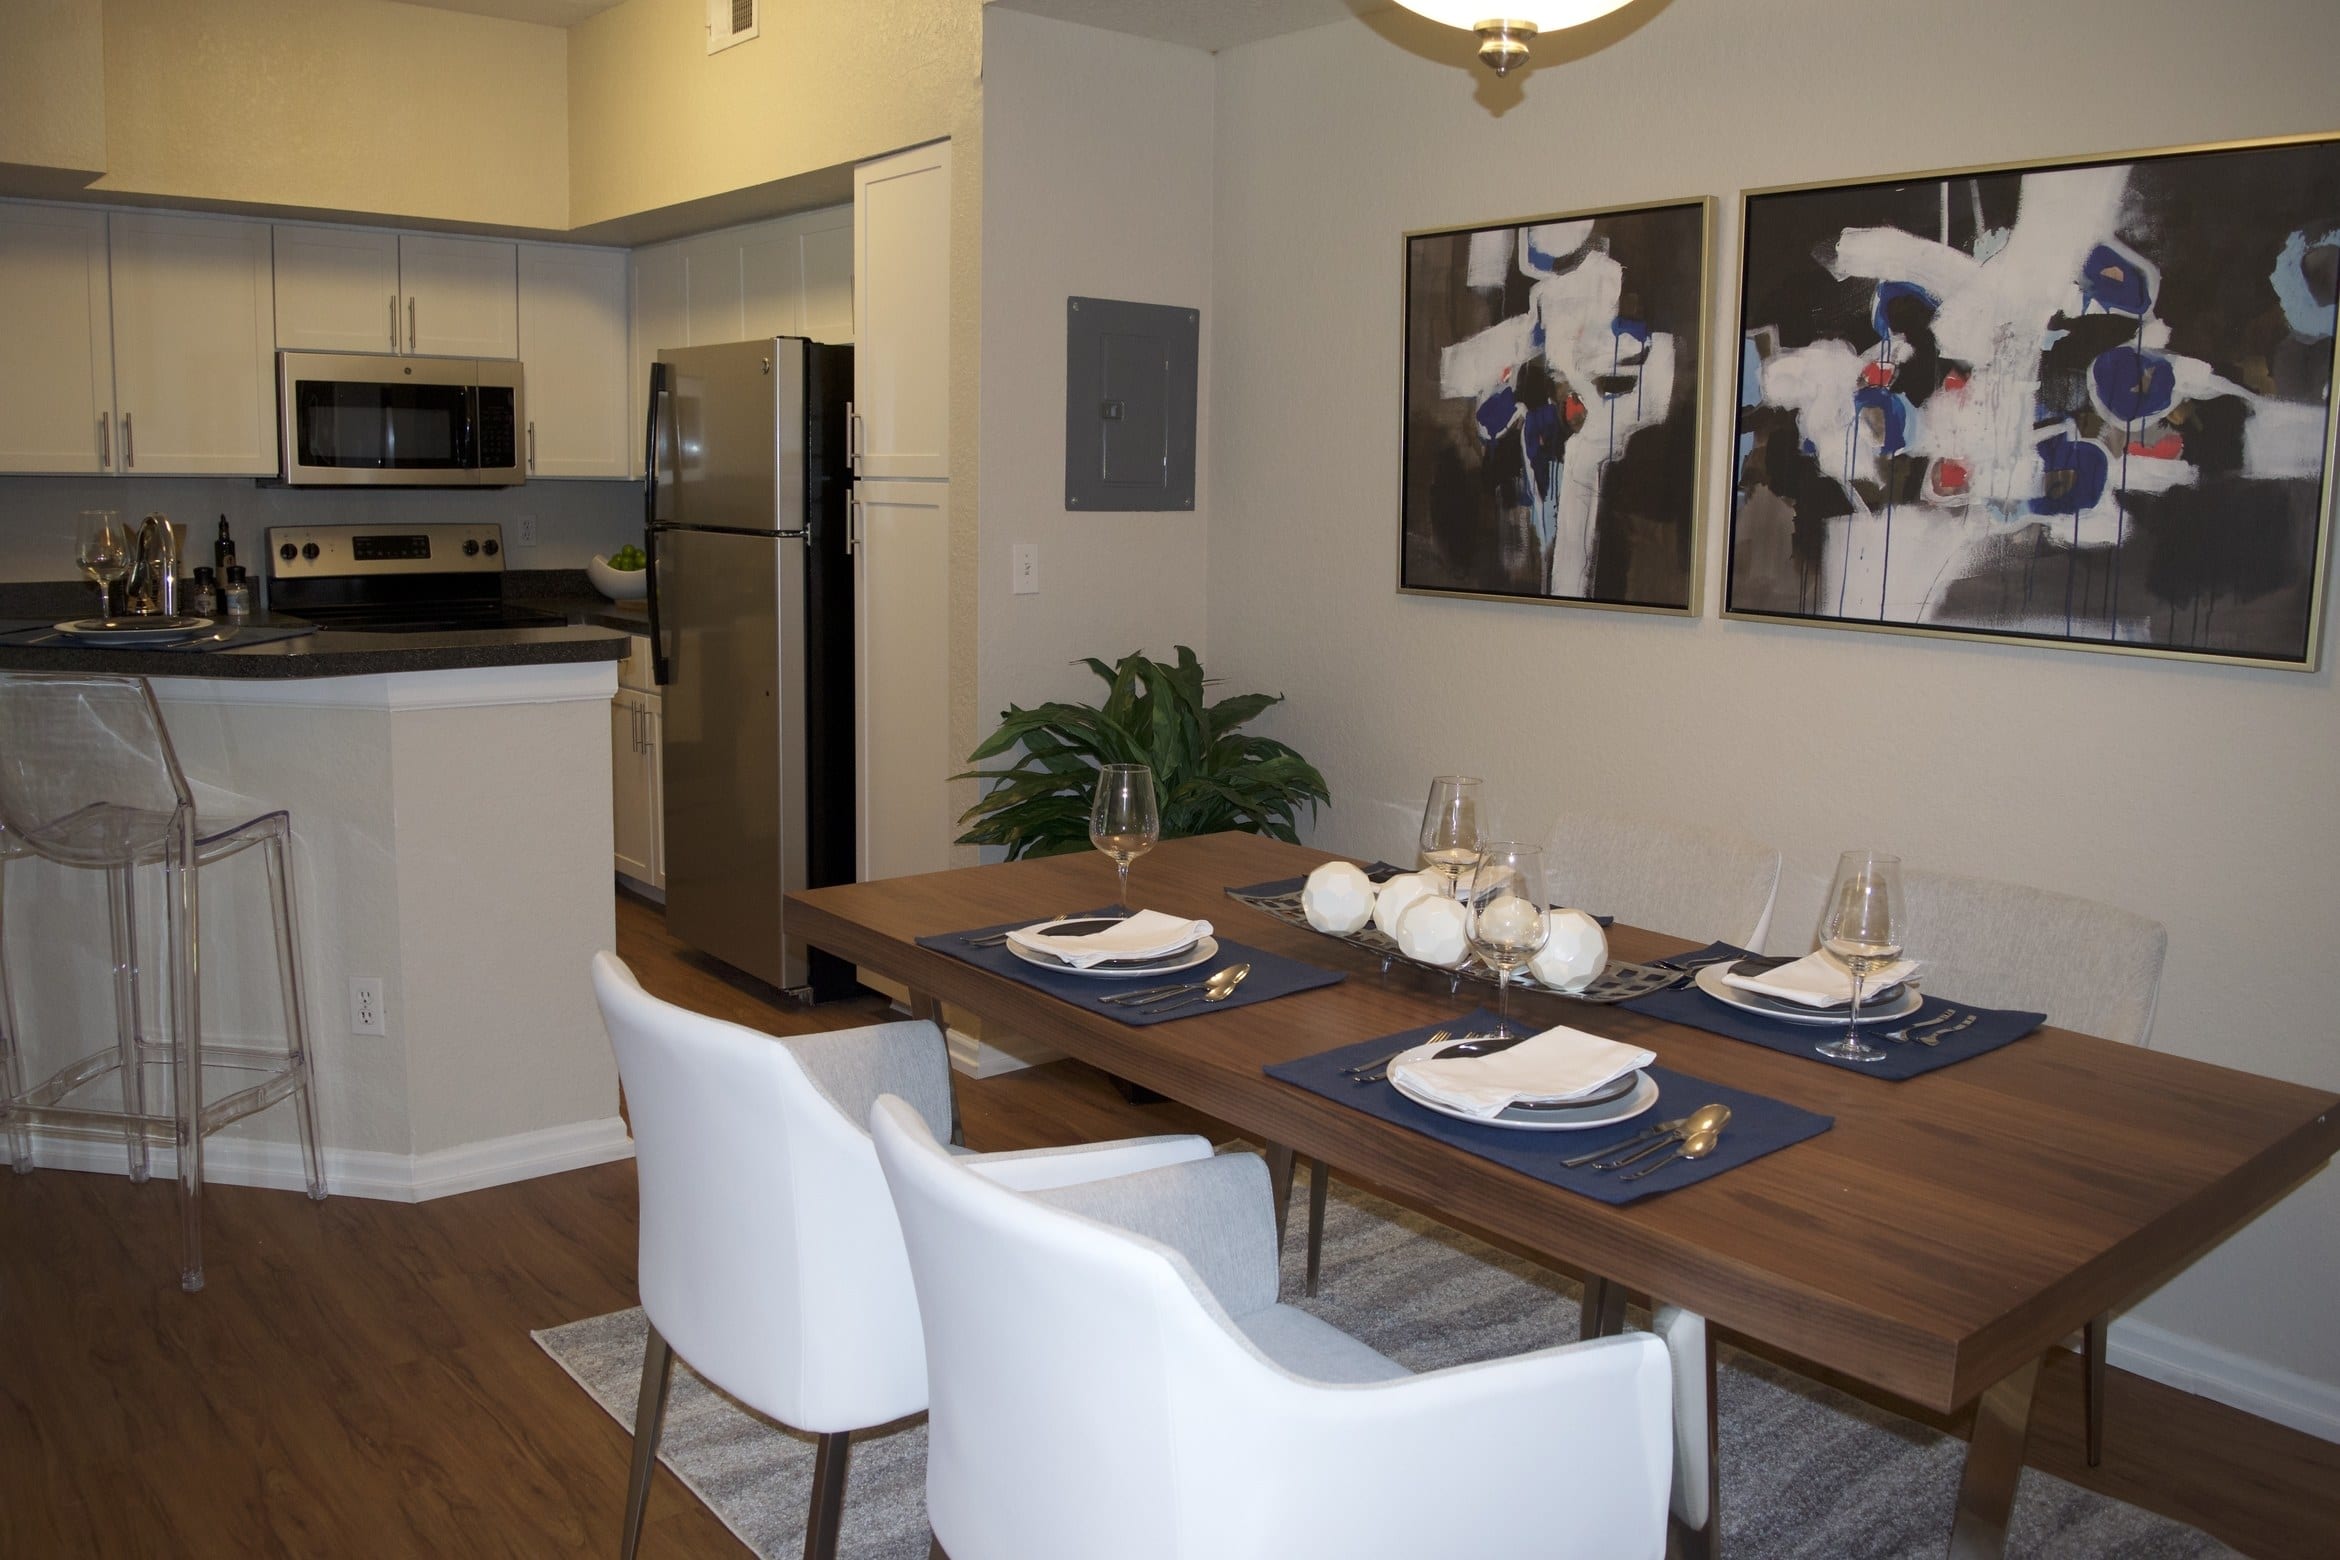 Simple Alvista Apartments Orlando for Simple Design